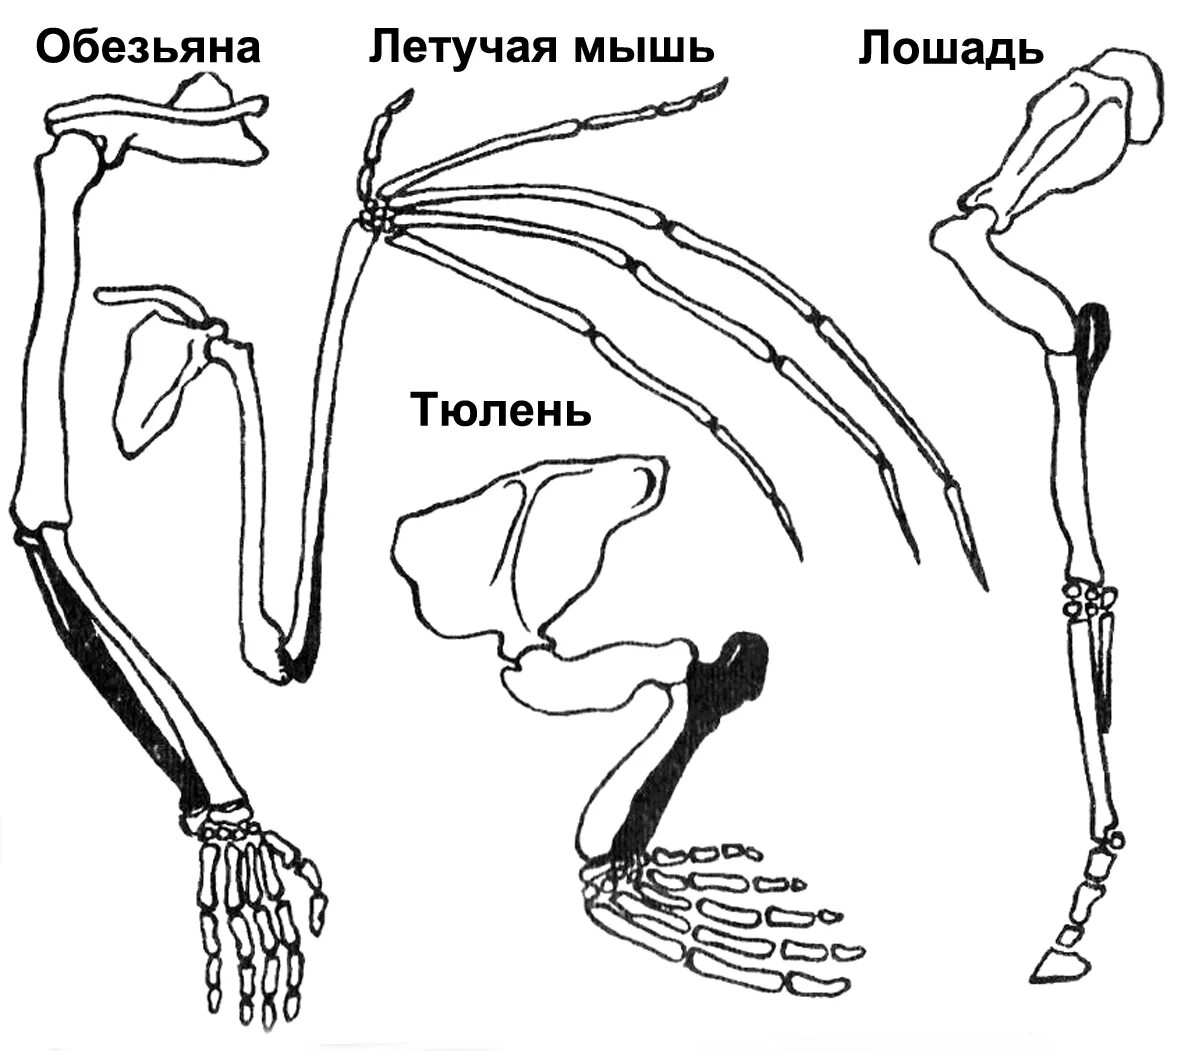 Скелет пояса задних конечностей млекопитающих. Пояс задних конечностей у млекопитающих. Строение задних конечностей млекопитающих. Строение скелета верхней конечности позвоночных животных. Скелет парных конечностей